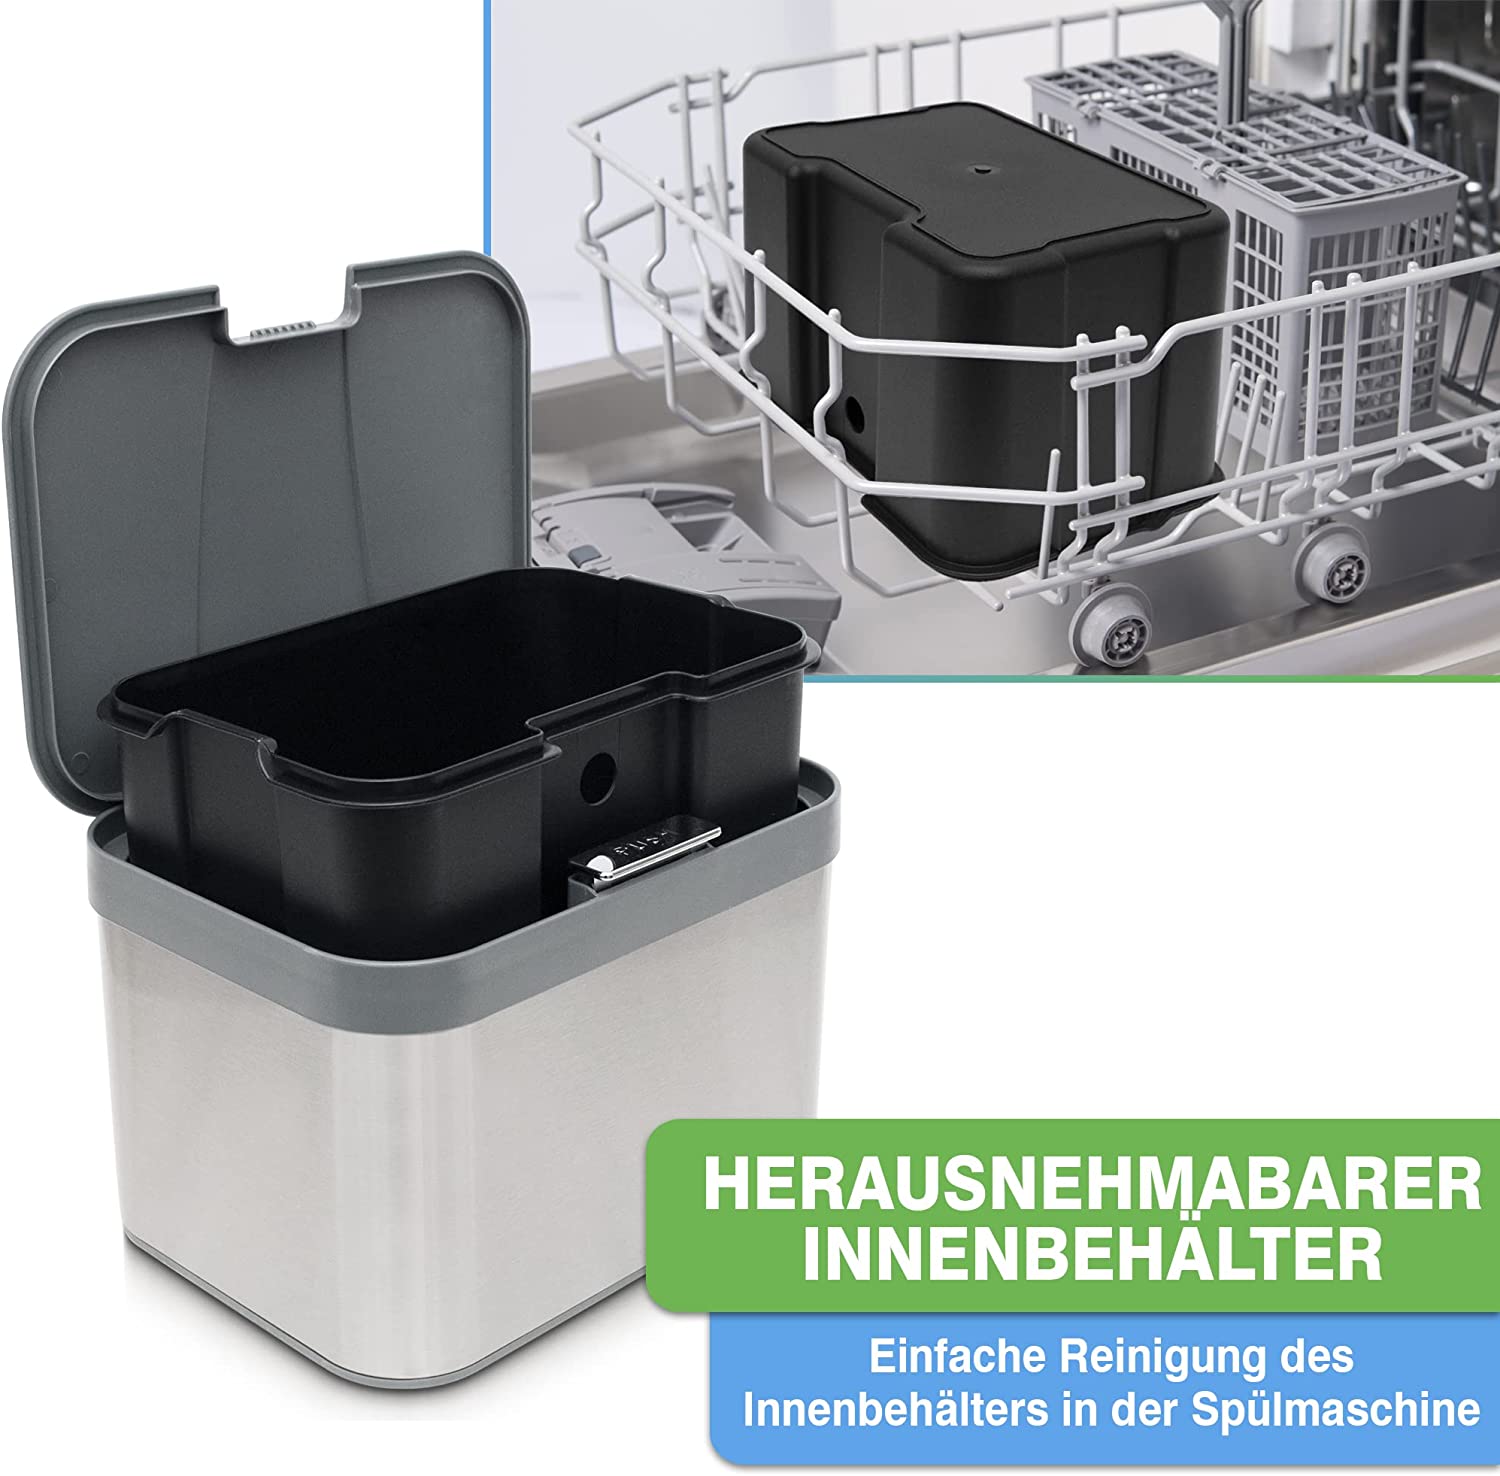 YourCasa® Edelstahl Komposteimer mit herausnehmbarem Innenbehälter, der eine einfache Reinigung in der Spülmaschine ermöglicht und im Edelstahldesign von yourcasa-de überzeugt.